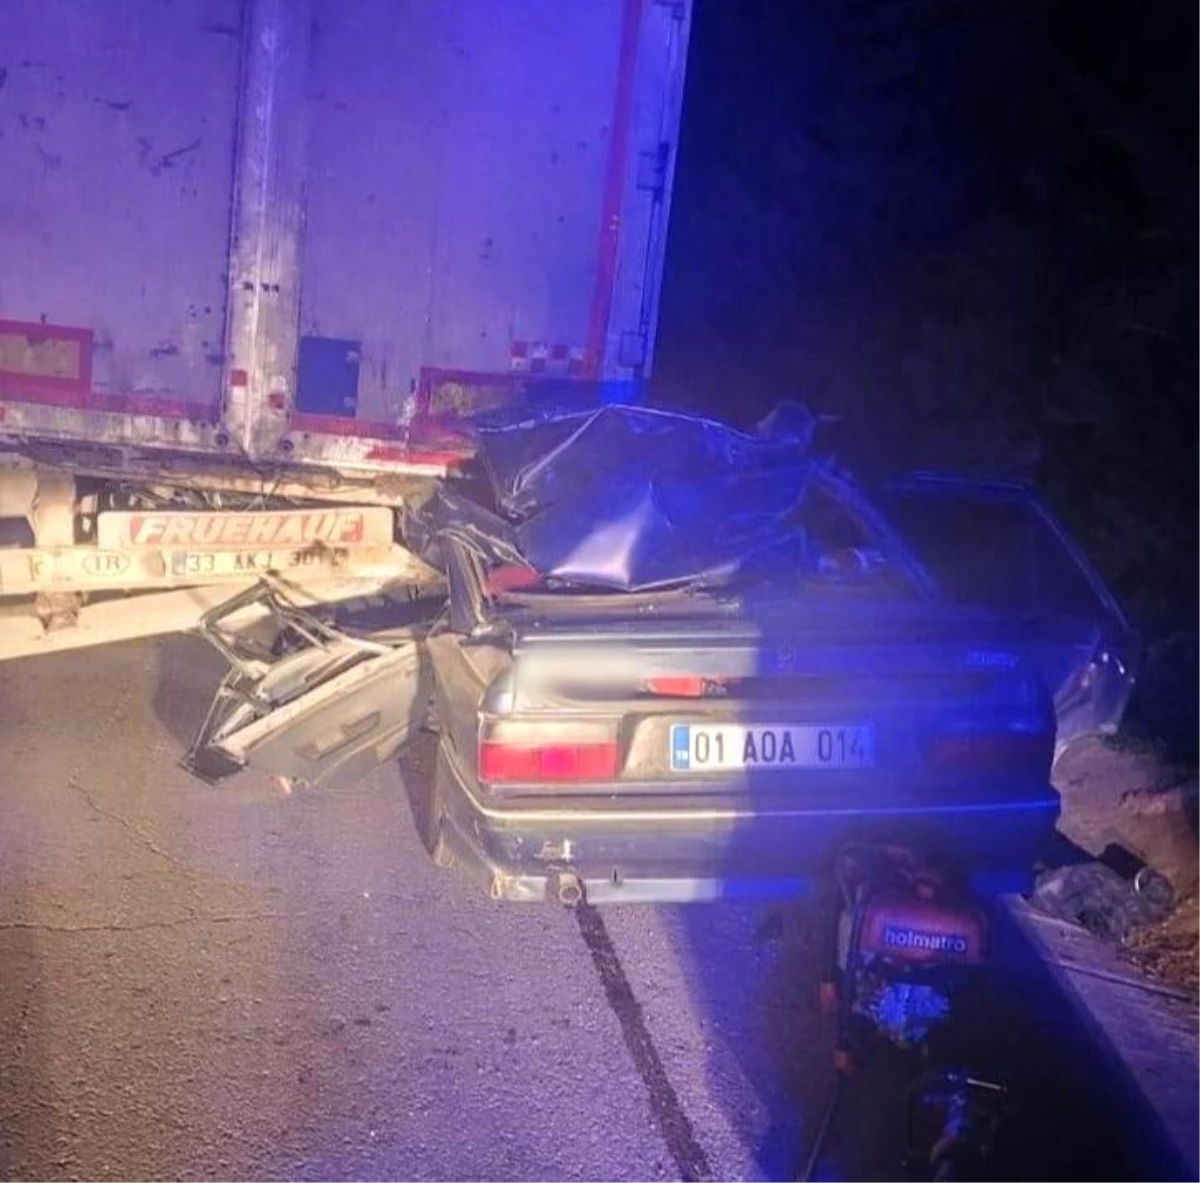 Mersin\'de otomobilin tıra arkadan çarpması sonucu 2 kişi hayatını kaybetti